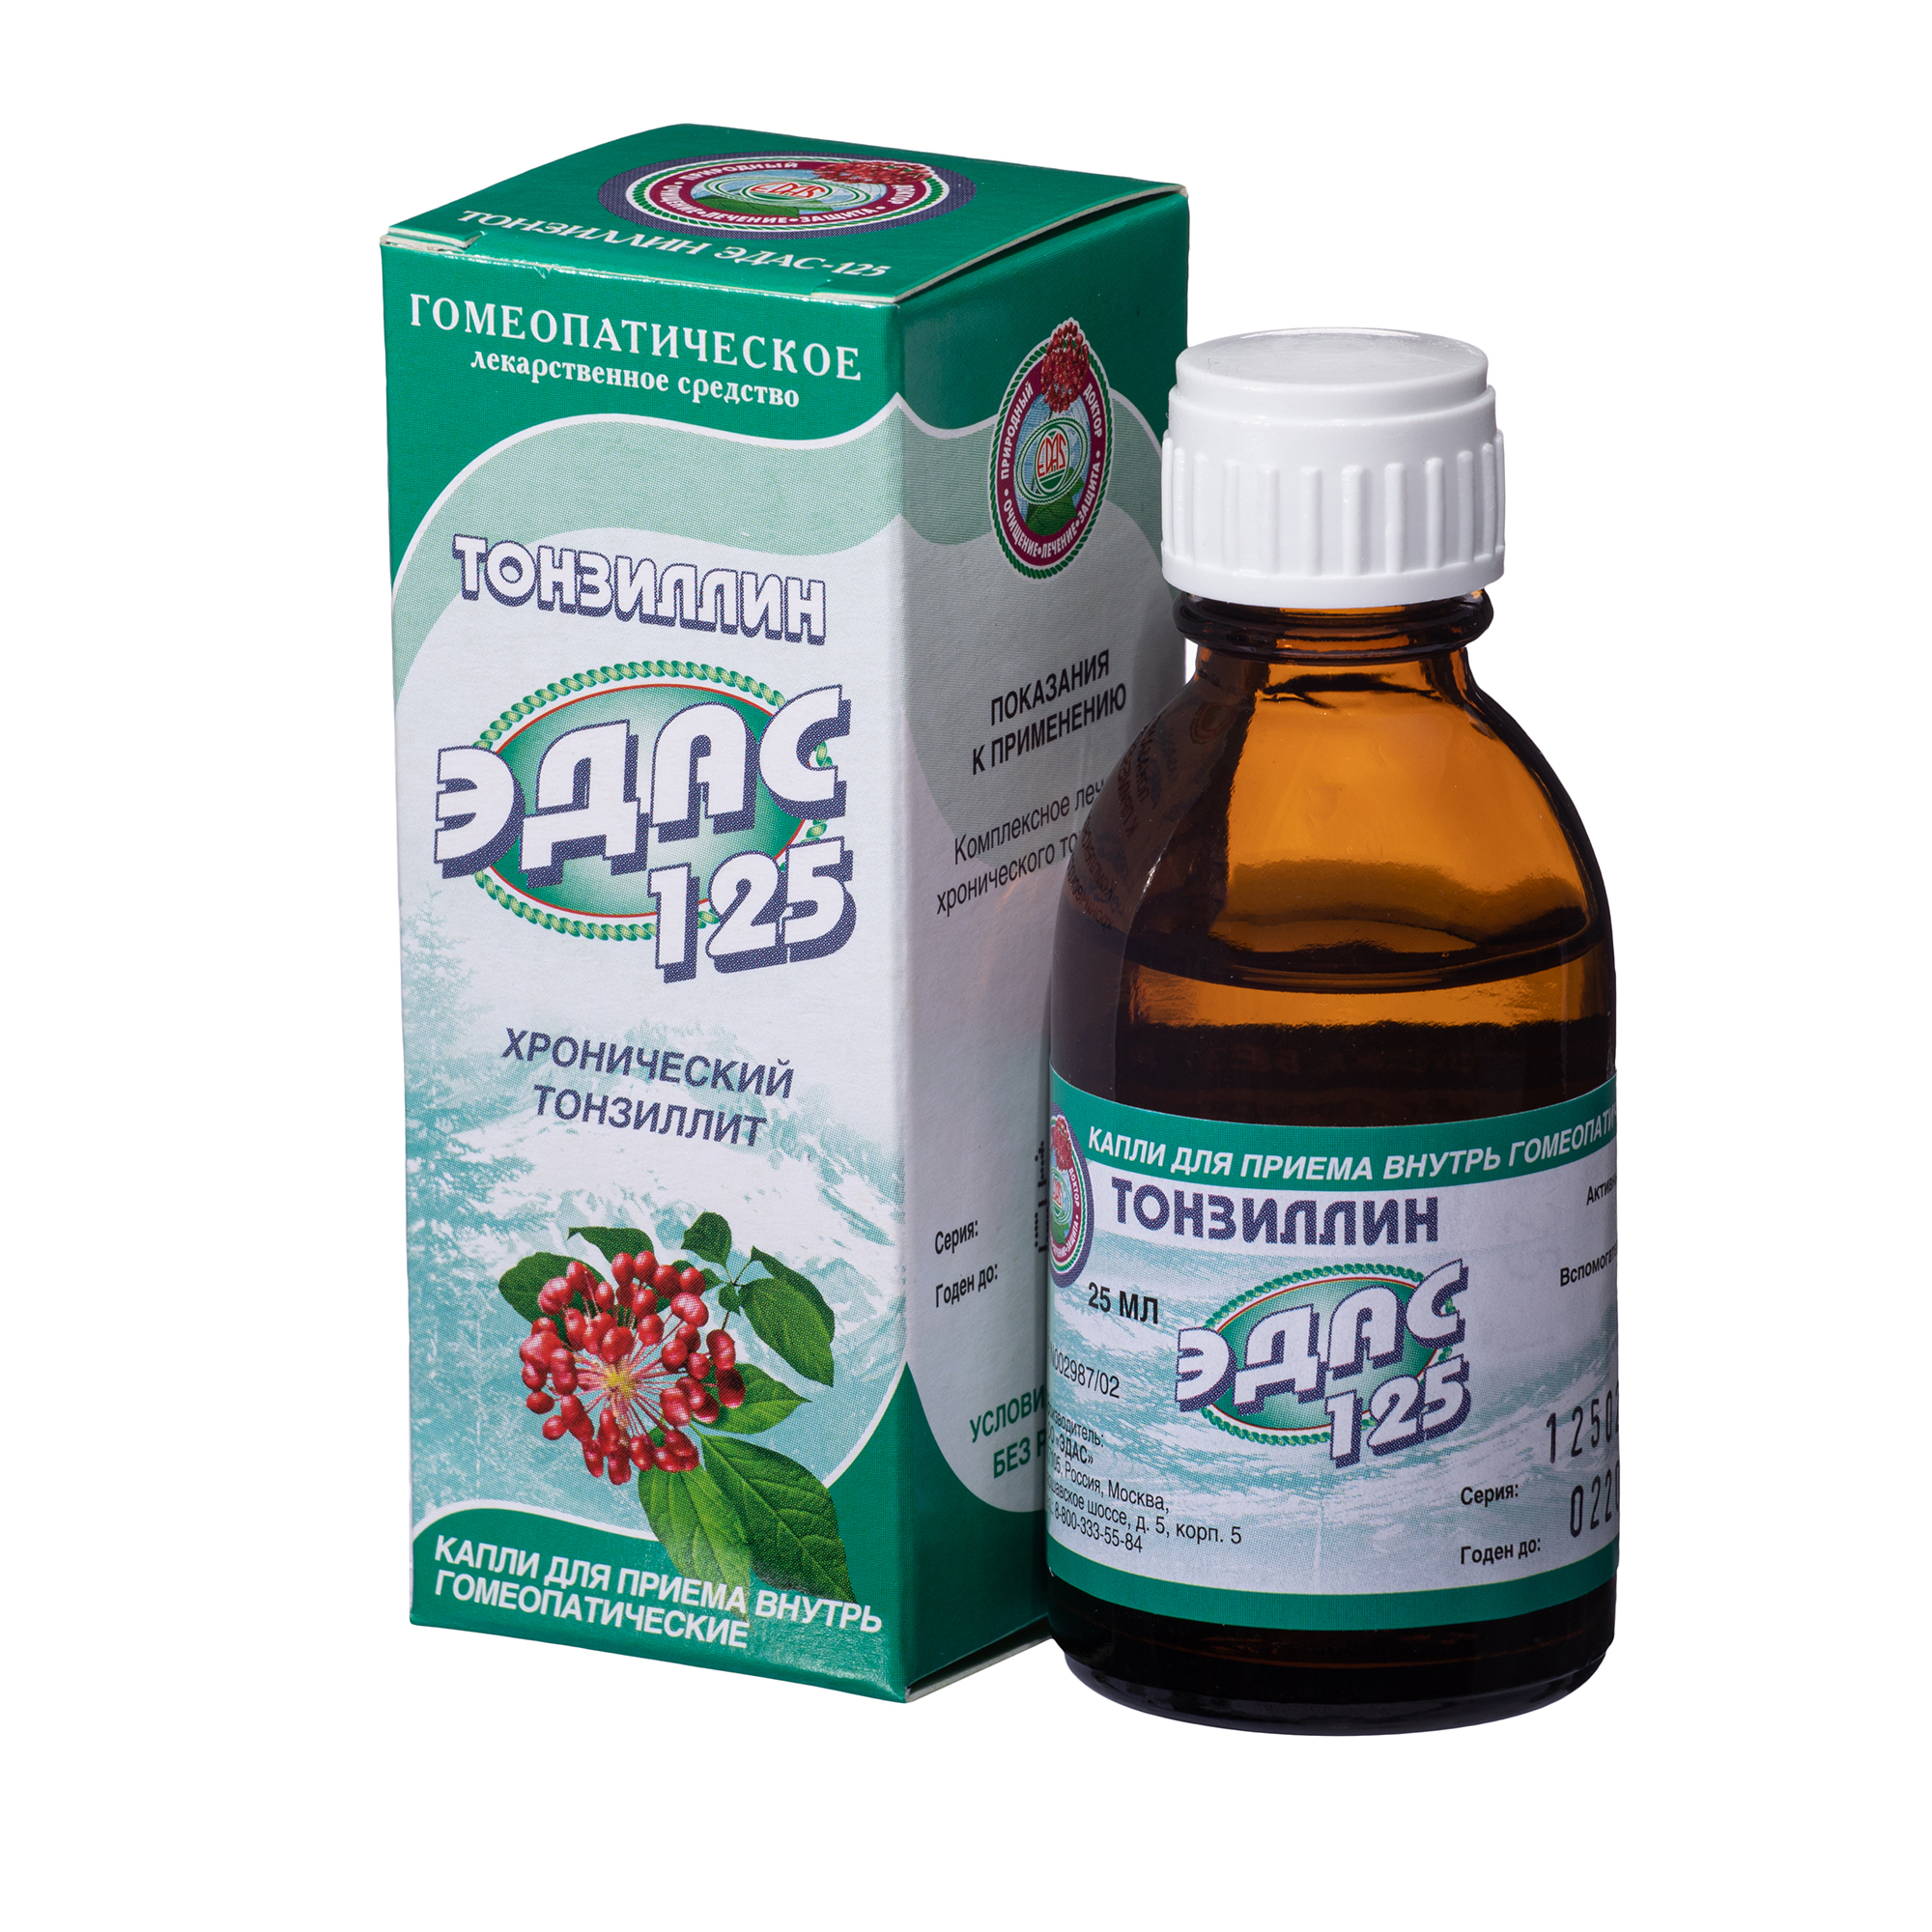 Тонзиллин Эдас-125, для лечения хронического тонзиллита, капли гом. 25 мл неформальный петербург путеводитель по культовым